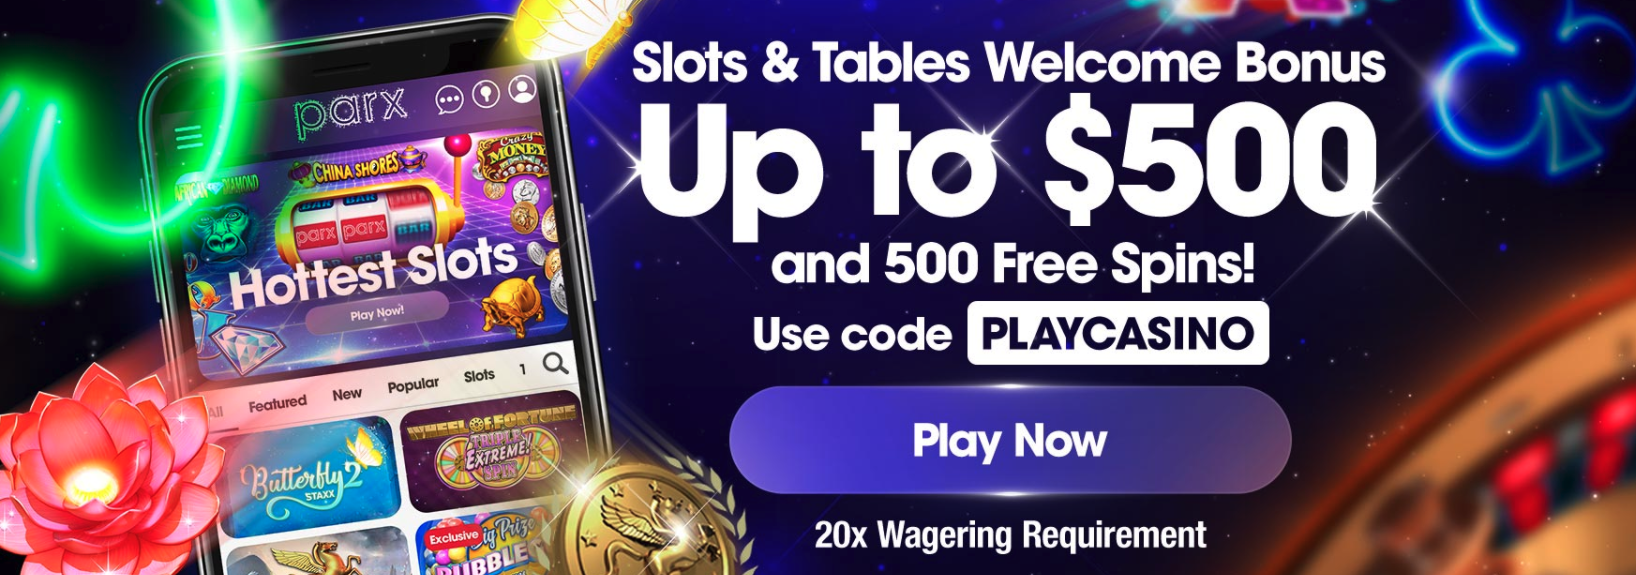 parx online casino no deposit bonus codes